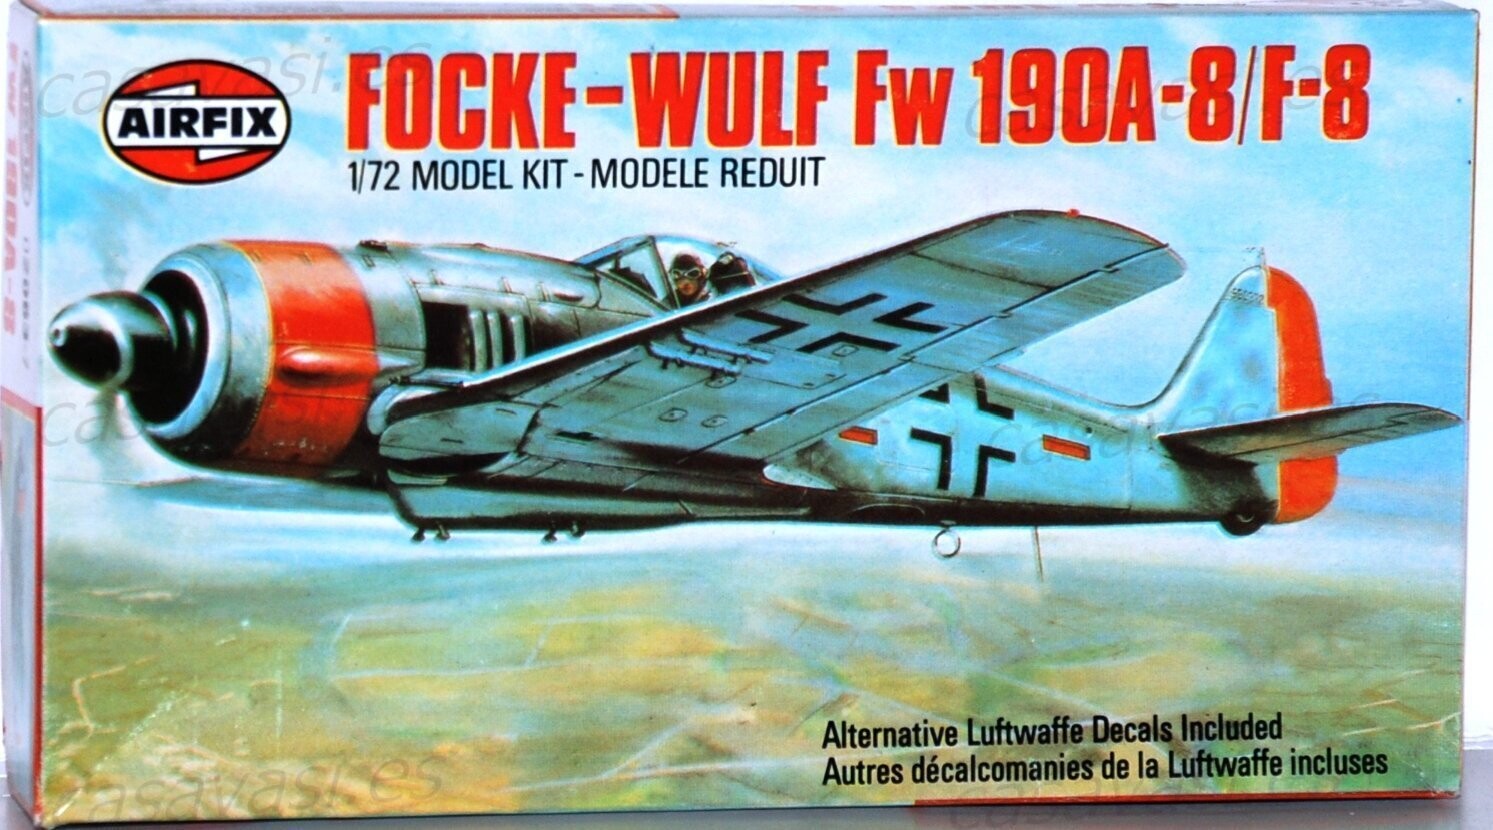 Airfix - 1978 - s2-02063-7 - 1/72 - Focke-Wulf Fw 190A-8/F8
Box Size 21 x 11.5 cm.